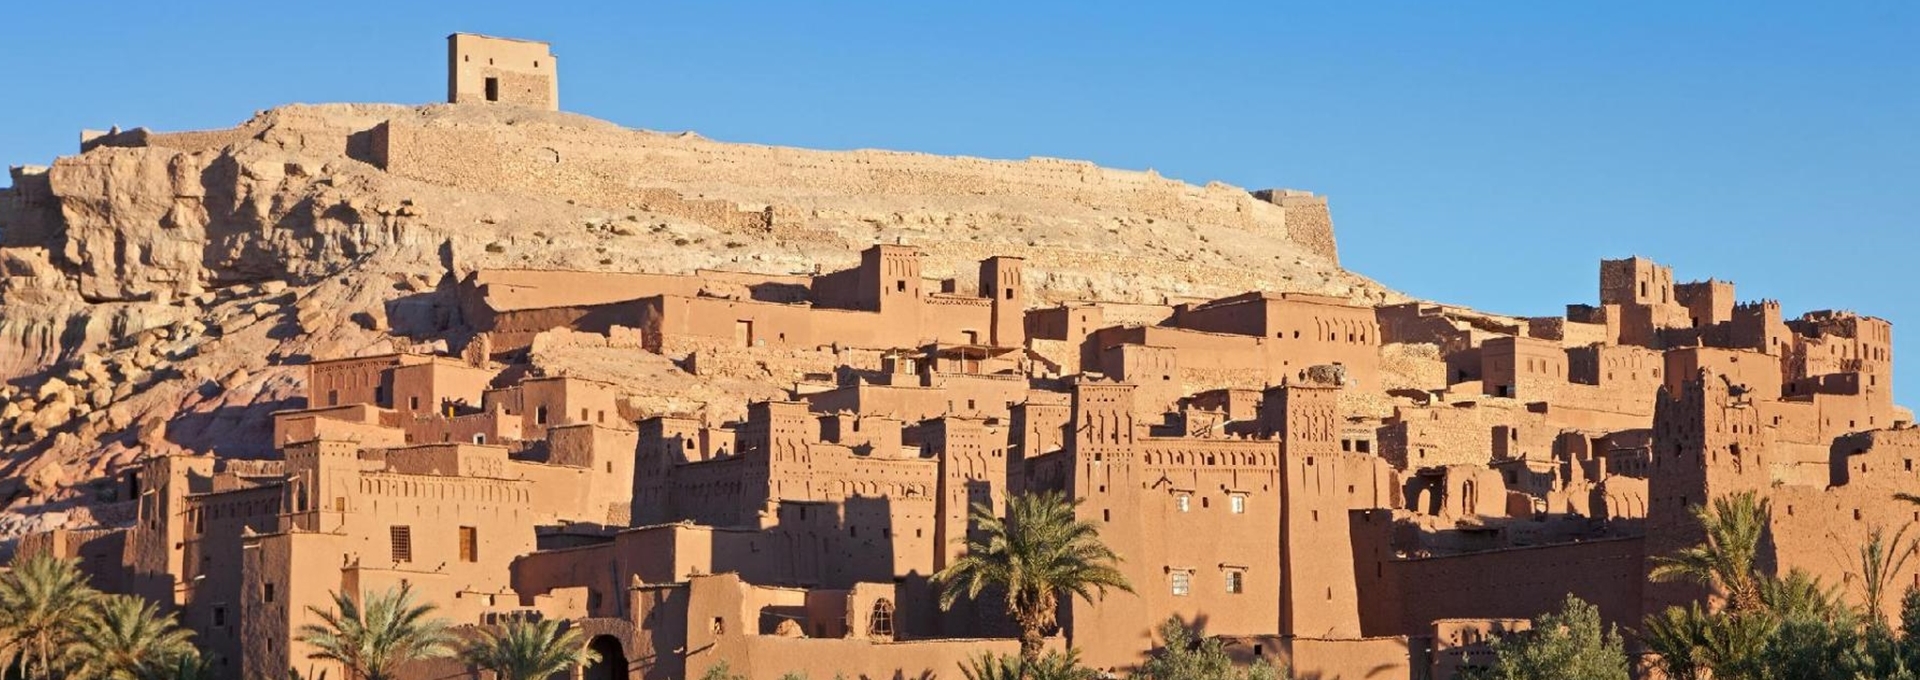 Εξωτικά ταξίδια στο Μαρόκο